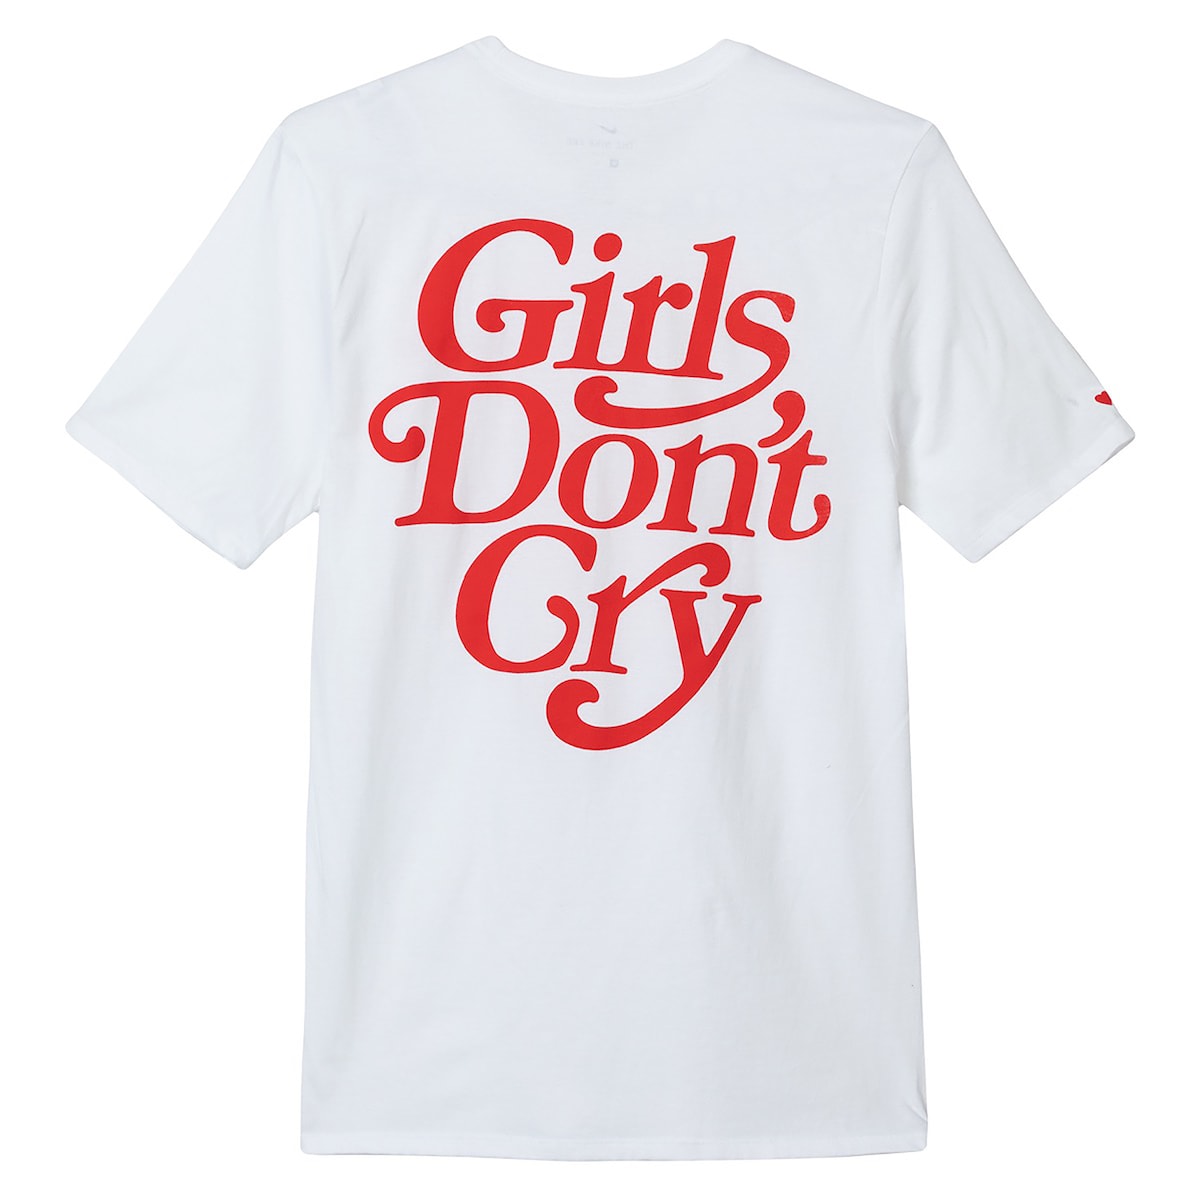 ガールズドントクライ ナイキ  Girls Don’t Cry Nike SB VERDY スポタカスケートボードショップ 大阪 販売方法 値段 価格 コラボレーション Tシャツ パーカー フーディ トート